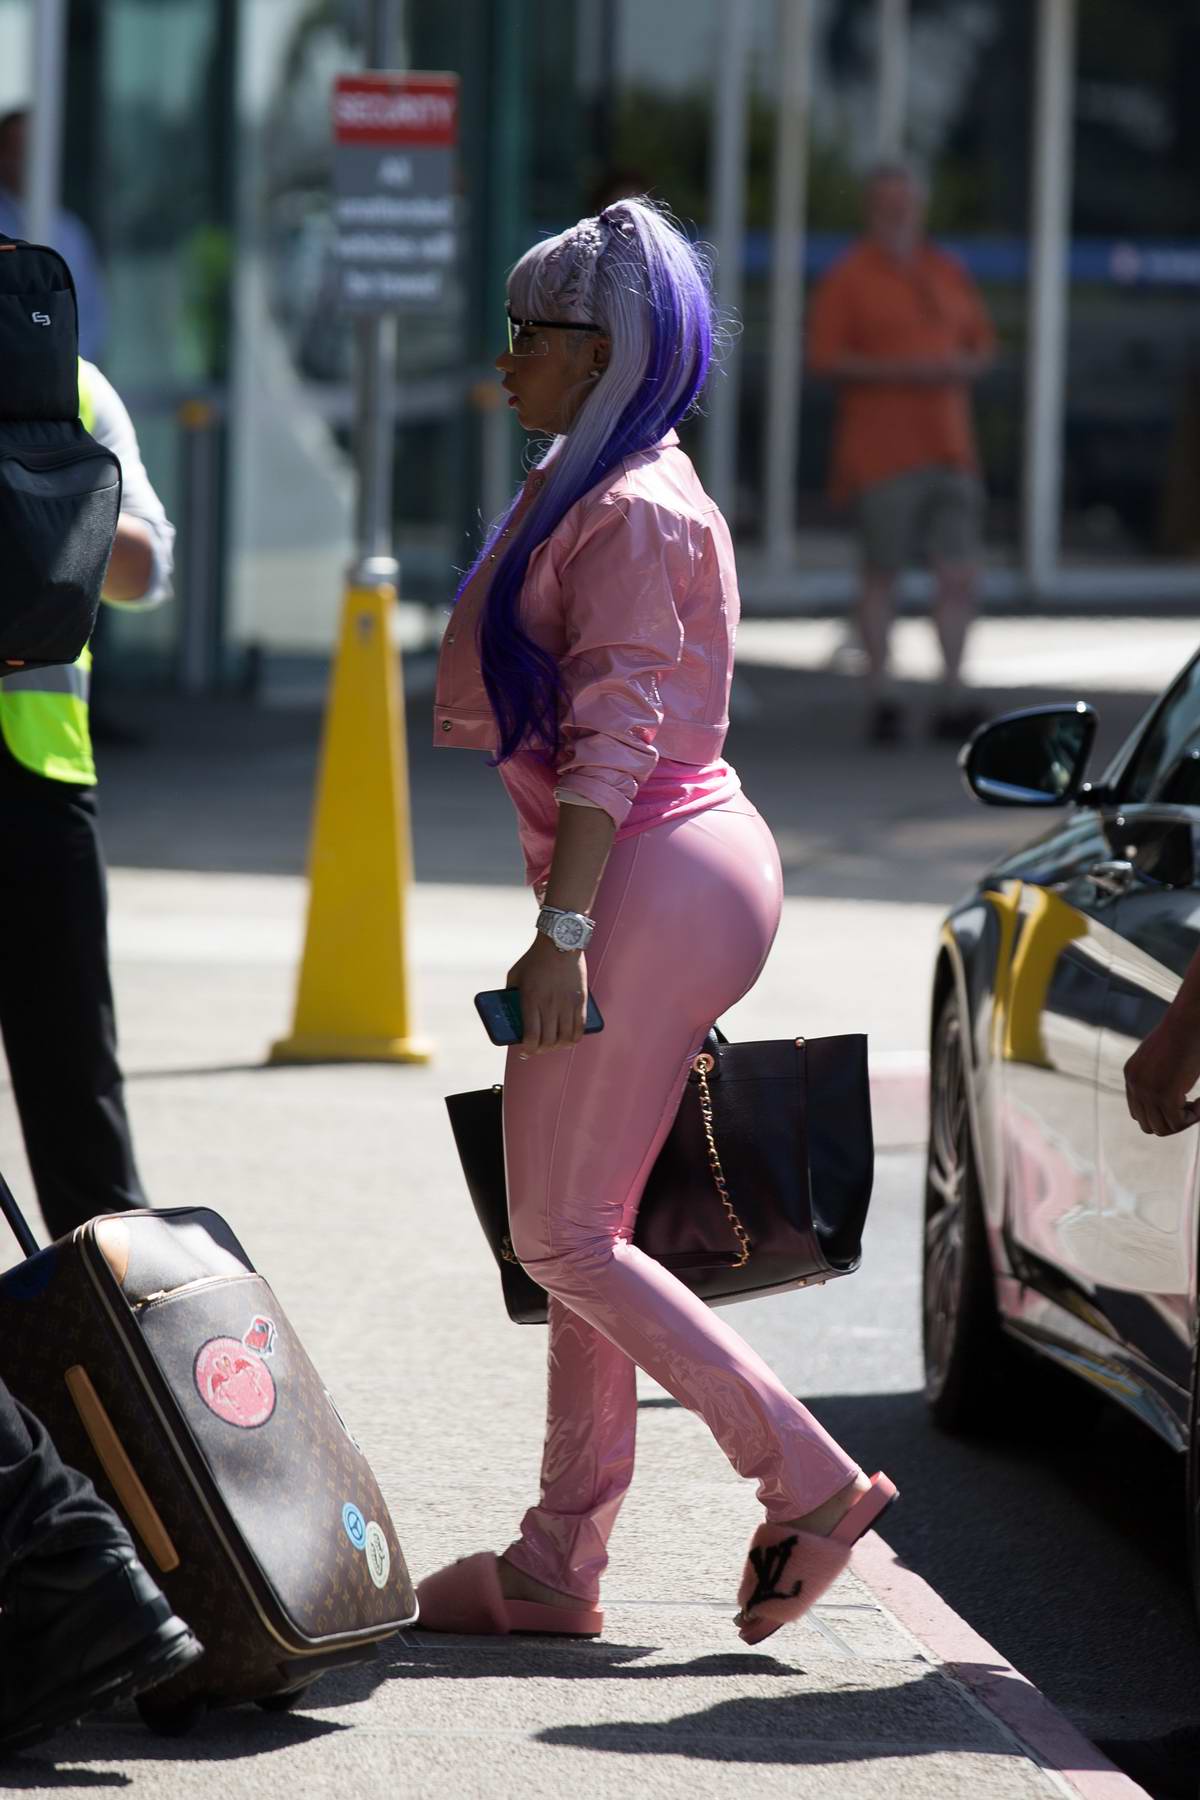 Nicki Minaj: Pink Sports Bra and Leggings